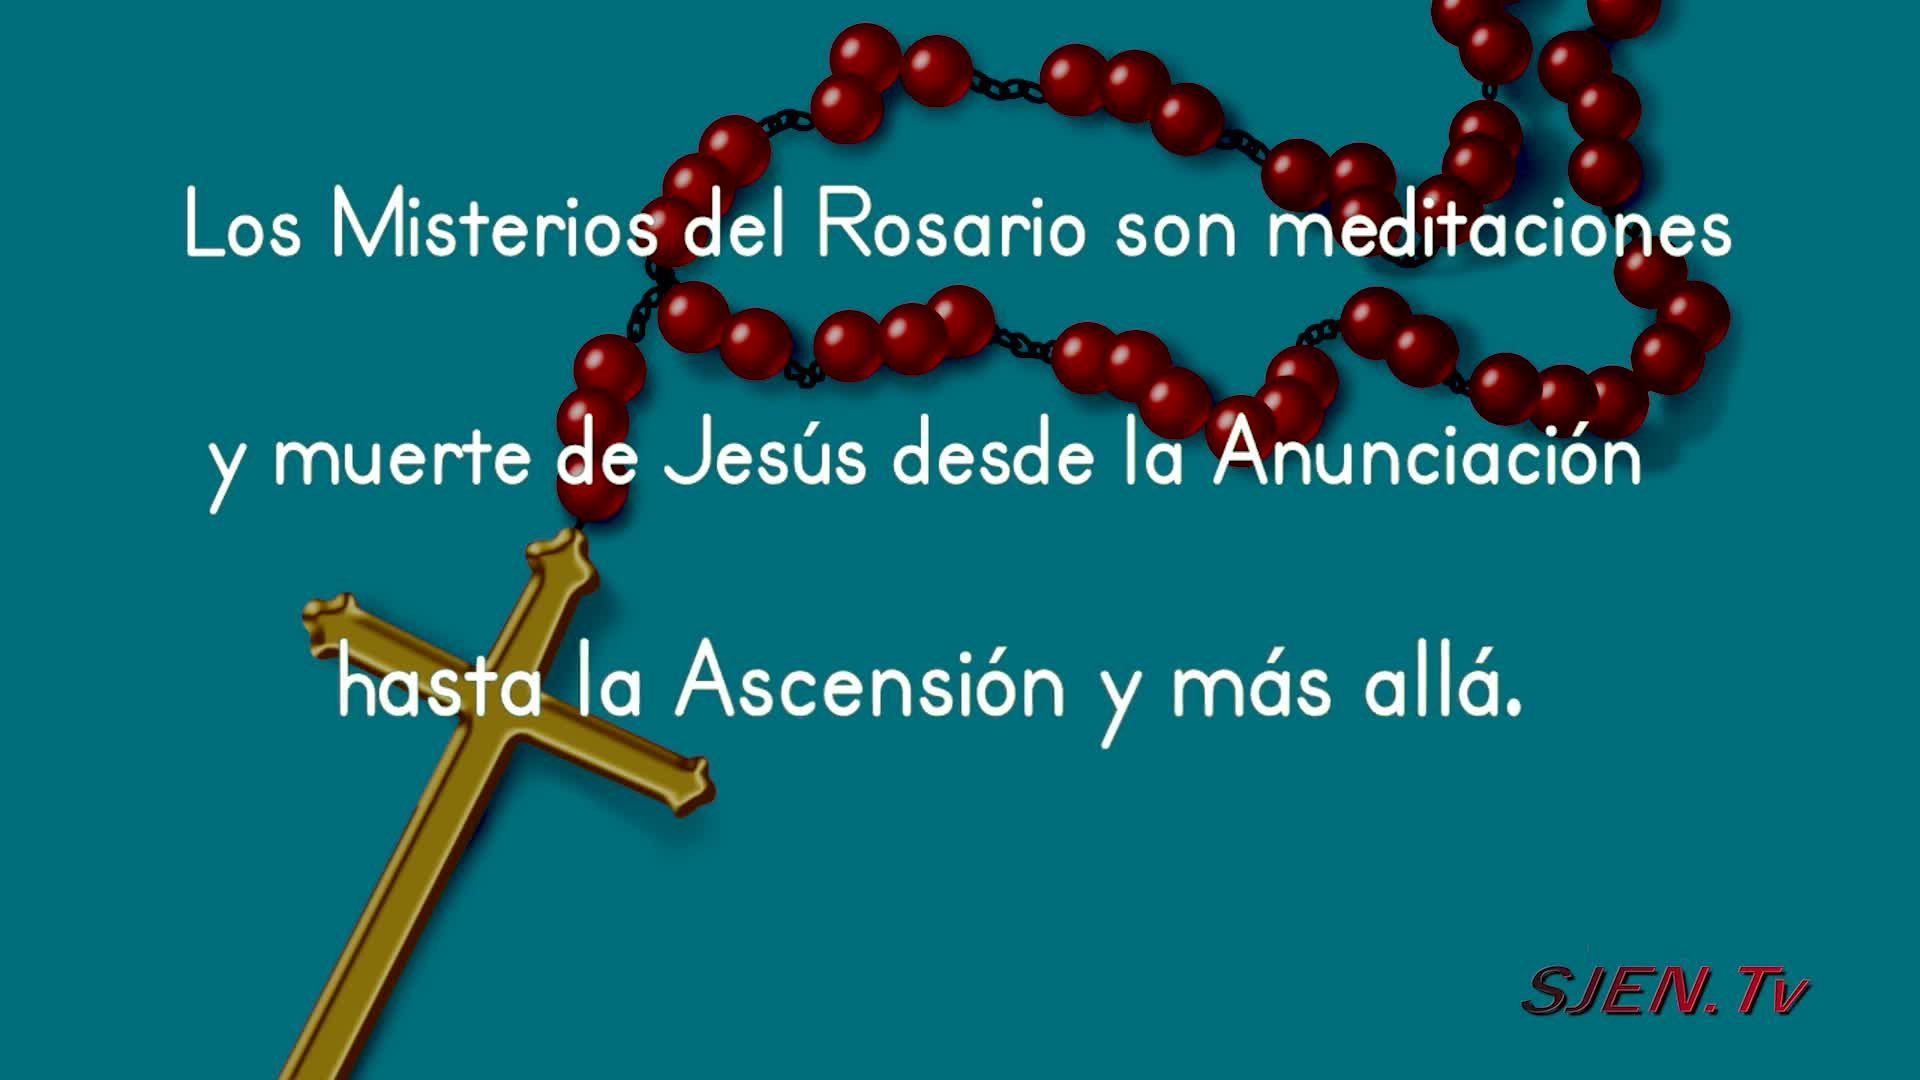 Los misterios del rosario